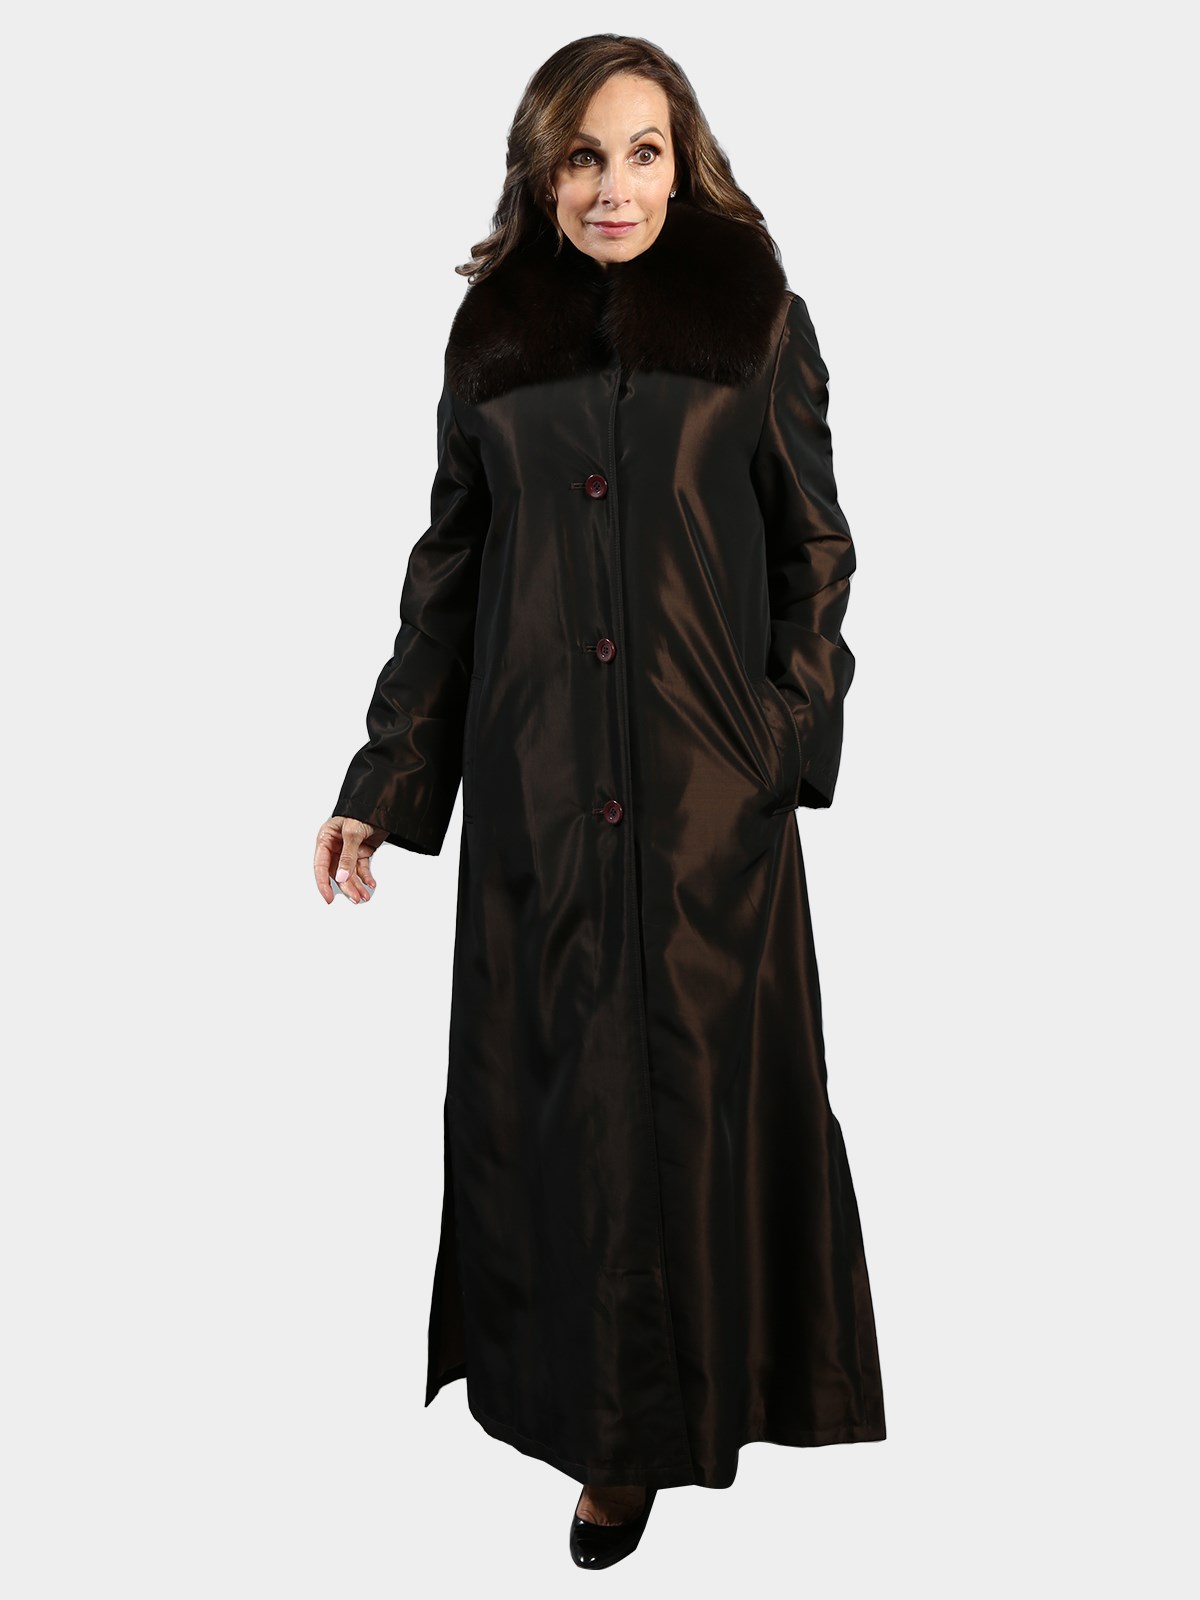 Woman's Bronze Raincoat with Rex Rabbit Fur Liner